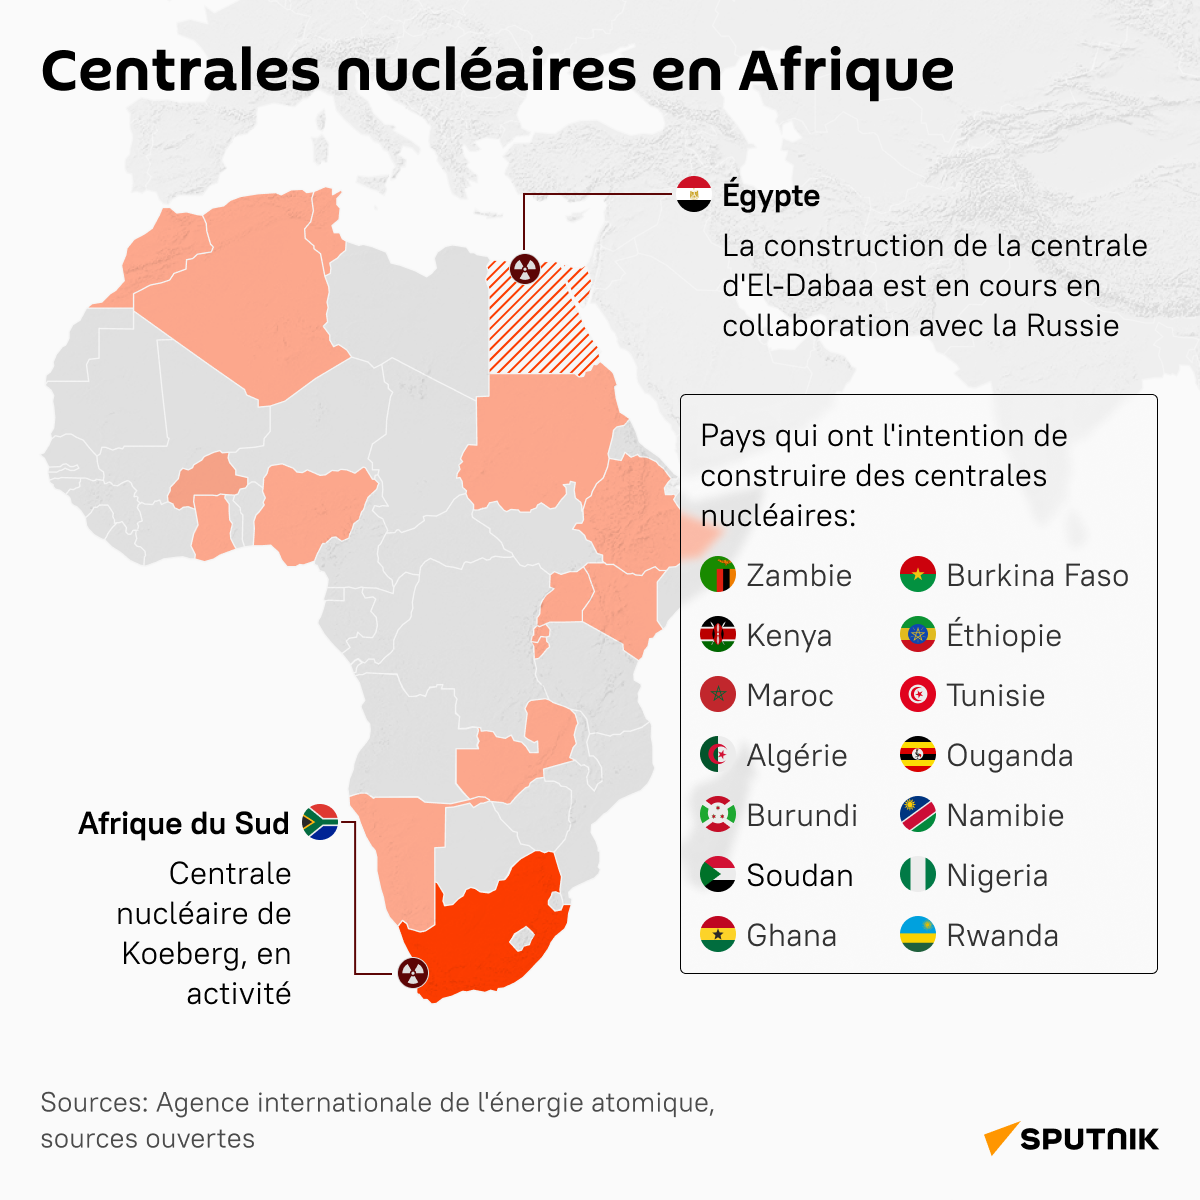 Centrales nucléaires en Afrique - Sputnik Afrique